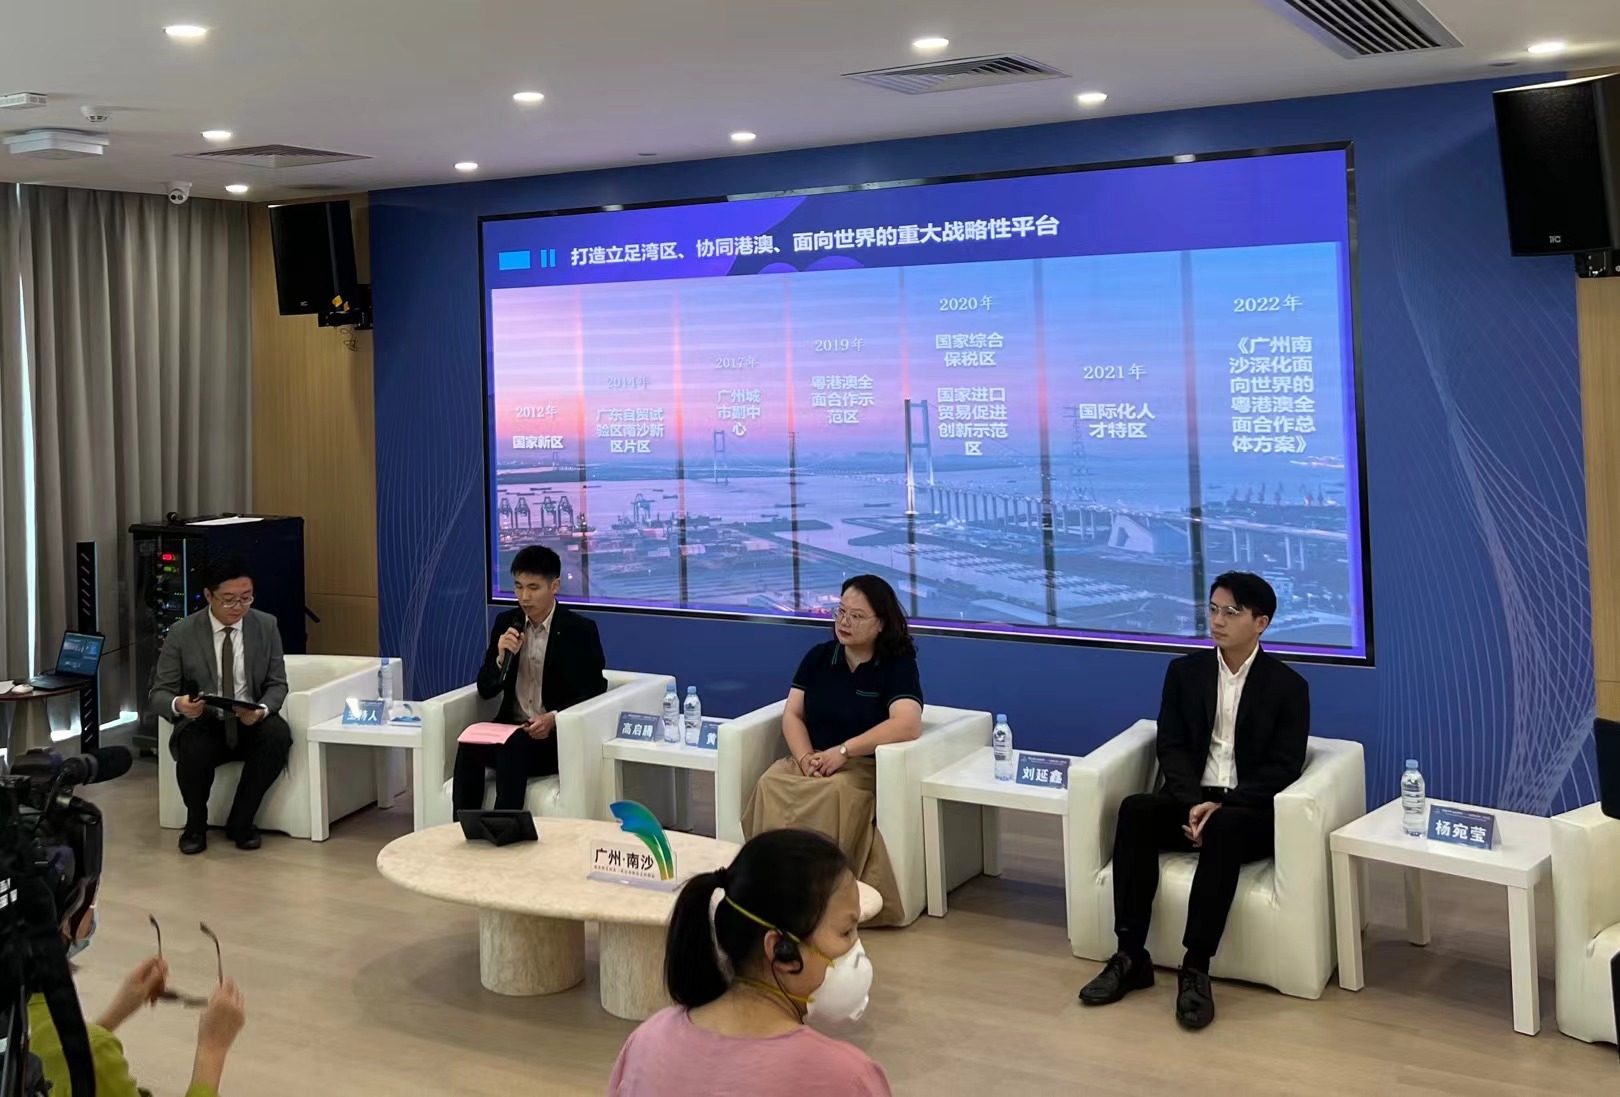 Guangzhou's Nansha shows its development to international media